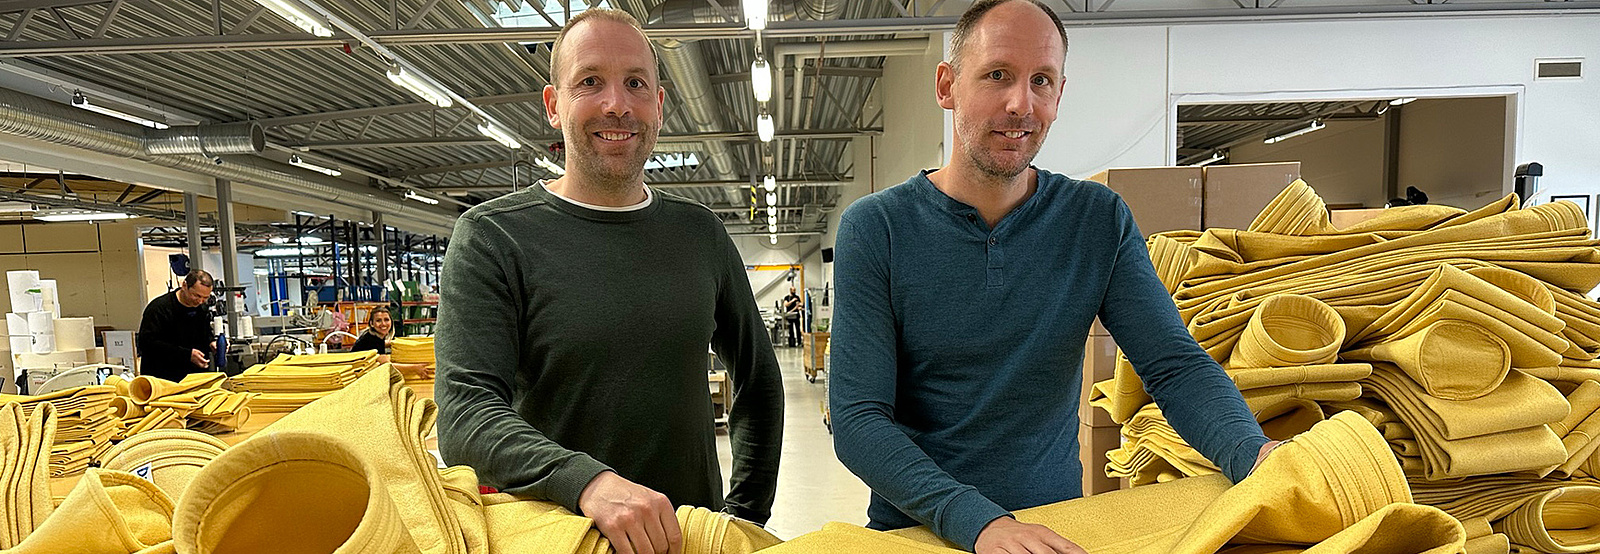 Två leende män står i en fabrikslokal, omringade av gula filterpåsar. 